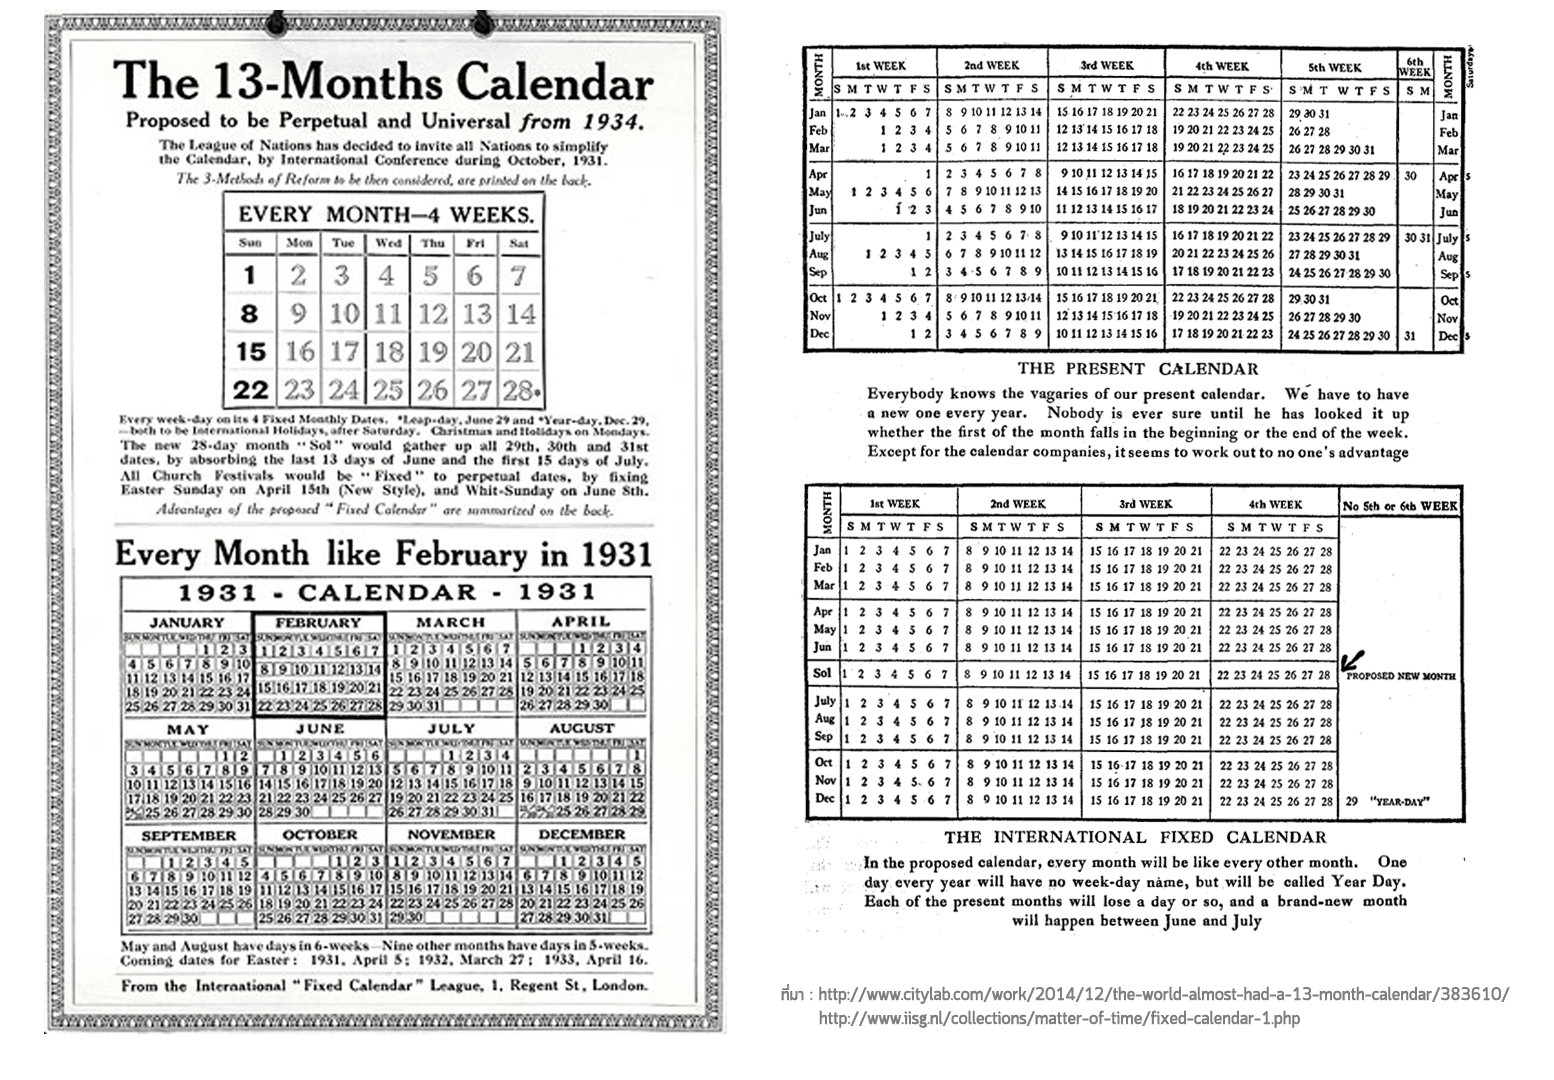 (ซ้าย) ใบเสนอแบบปฏิทิน 13 เดือนเปรียบเทียบให้เห็นว่าทุกเดือนของปีจะมีหน้าตาเหมือนเดือนกุมภาพันธ์ของปี 1931 / (ขวา) นิตยสาร The Outlook เมื่อปี 1927 ตีพิมพ์ภาพเปรียบเทียบปฏิทินแบบเกรโกเรียน (บน) เทียบกับปฏิทินแบบใหม่ (ล่าง)